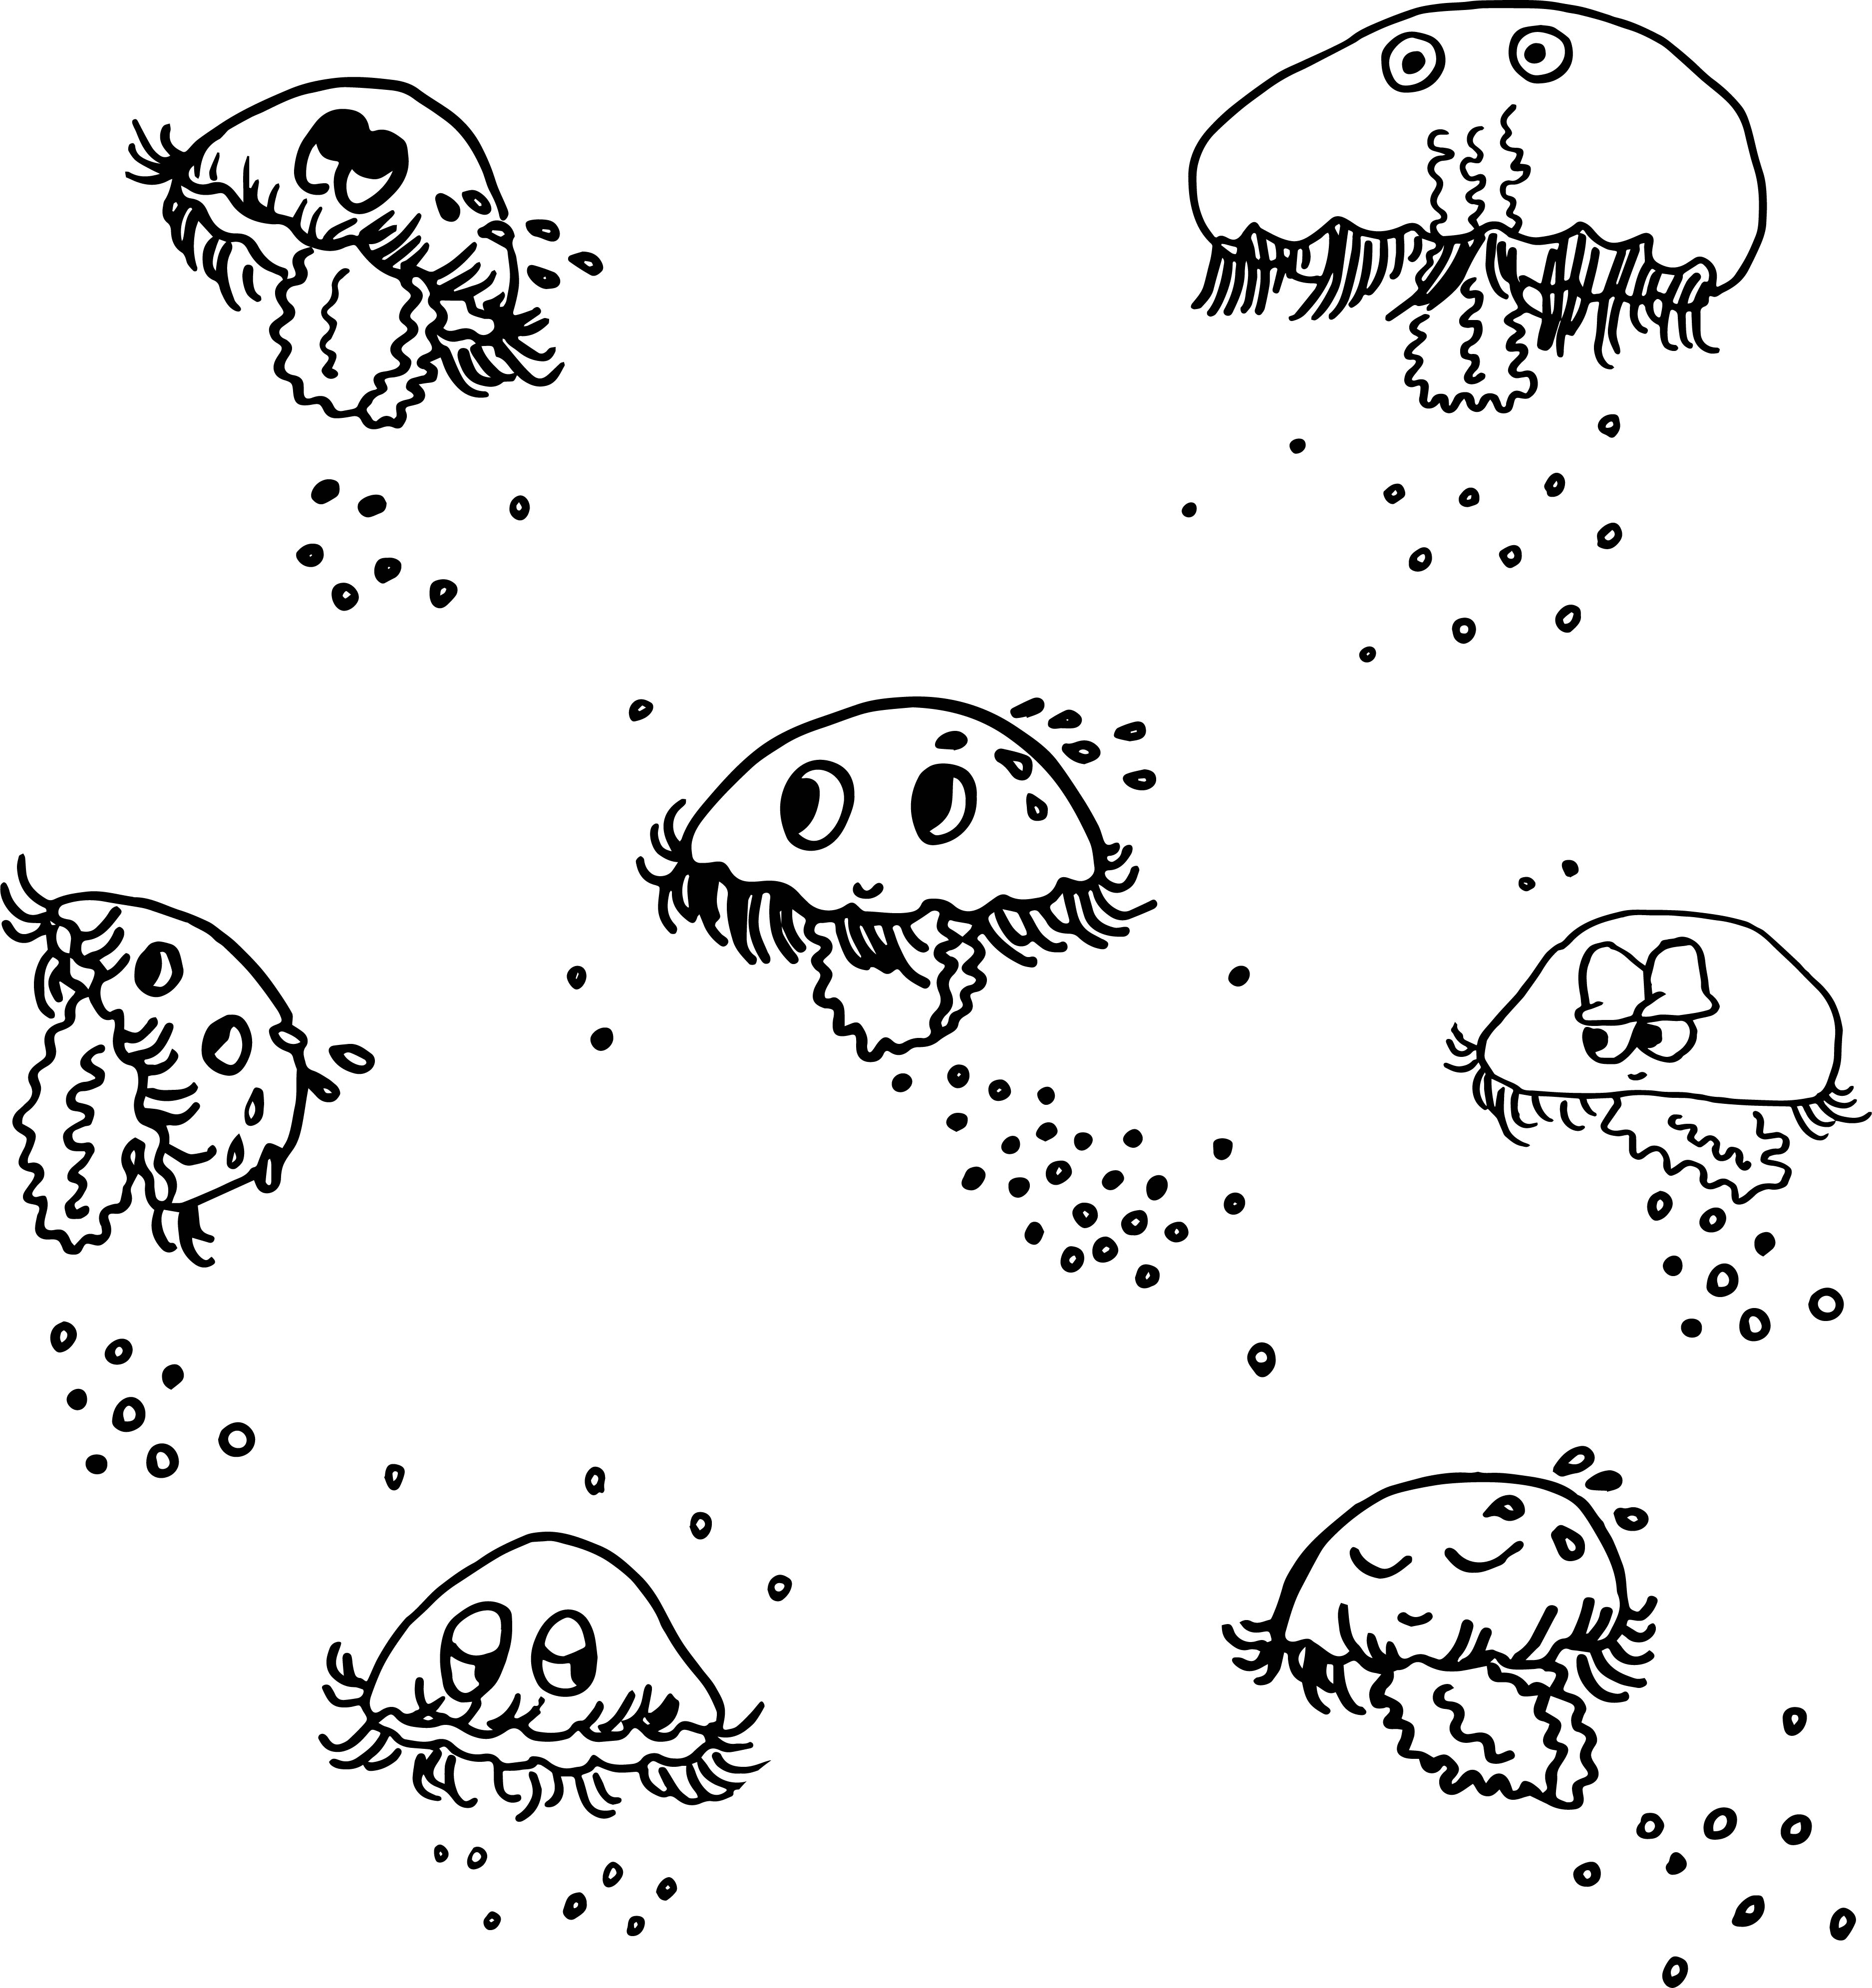 Jellyfish drawings